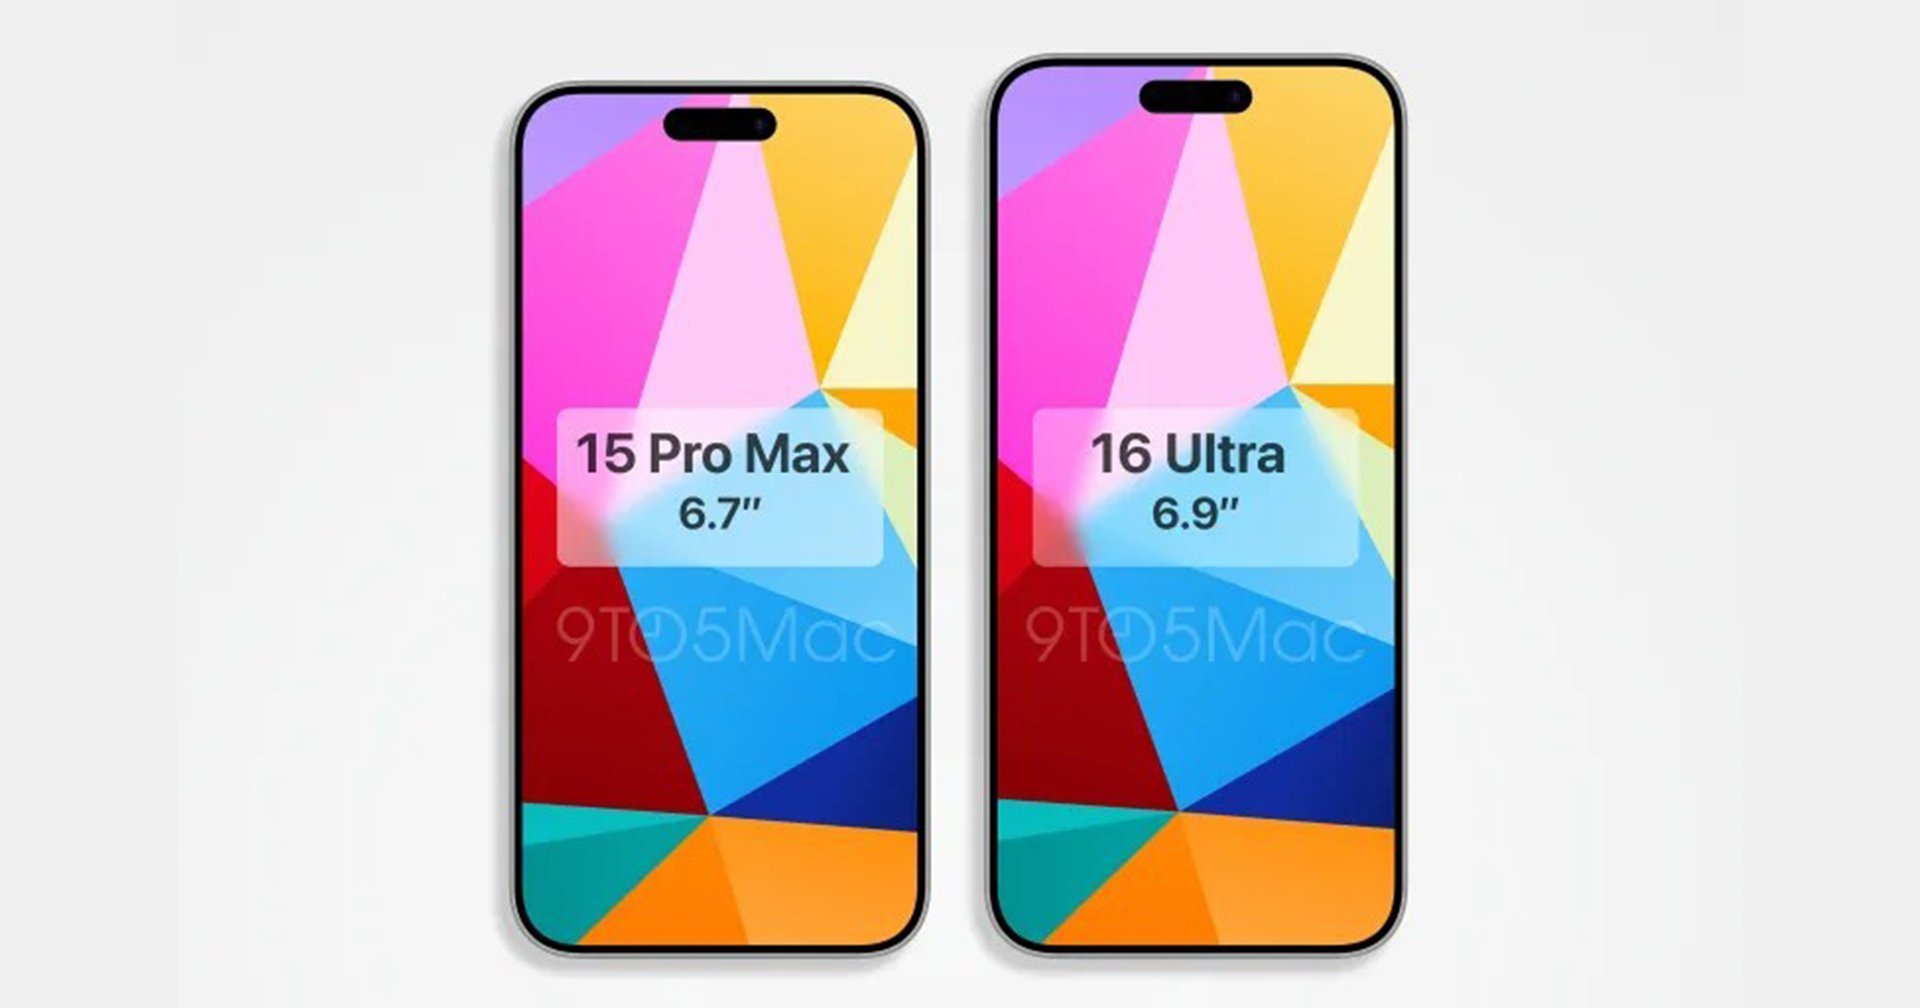 ภาพเรนเดอร์ iPhone 16 Ultra คู่กับ iPhone 15 Pro Max: เผยหน้าจอใหญ่ขึ้นชัดเจน